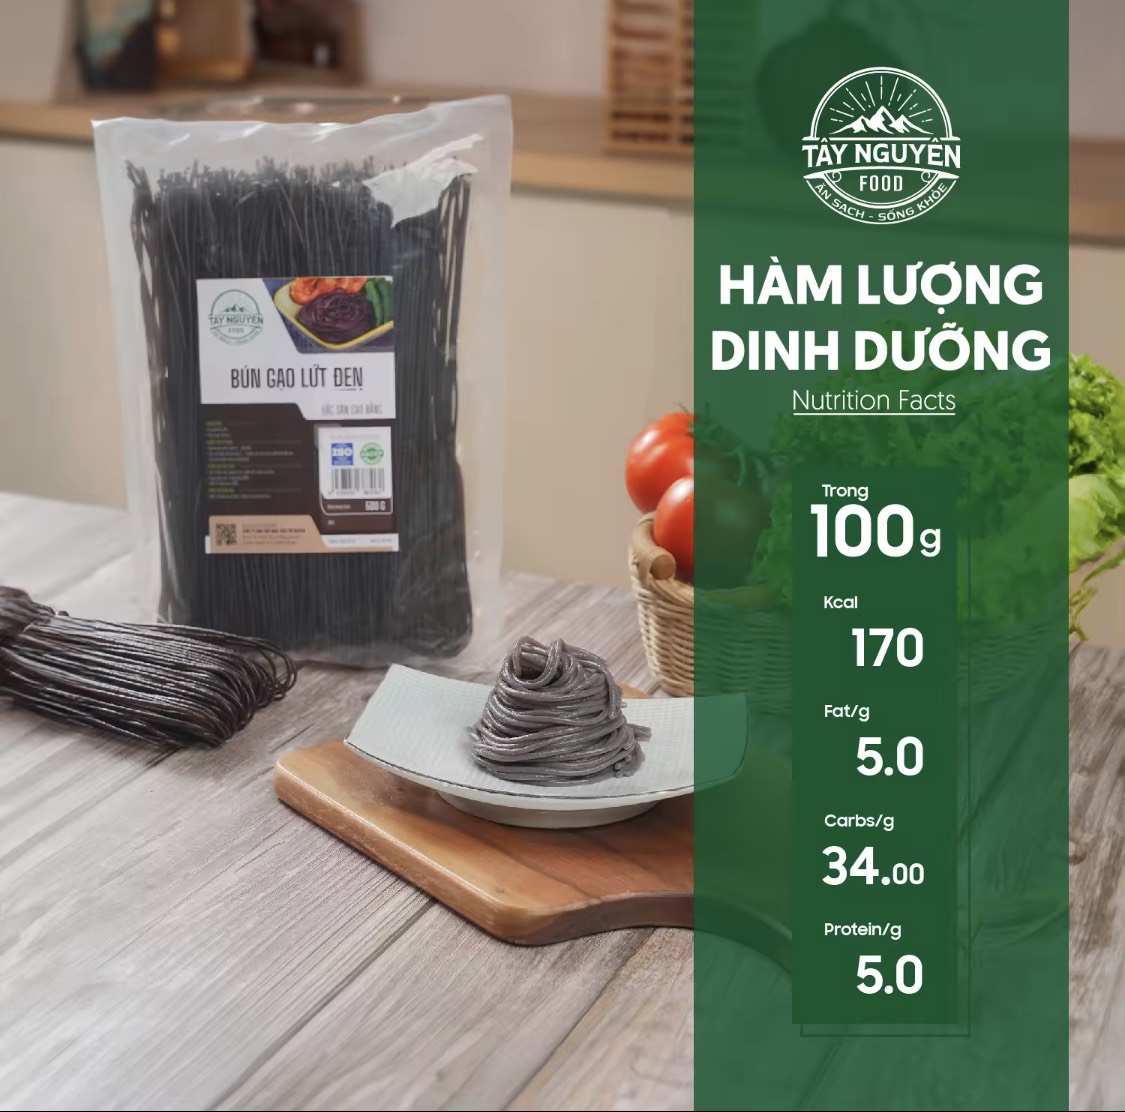 Bún gạo lứt đen Cao Bằng eatclean Tây Nguyên Food - Việt Nam 500g